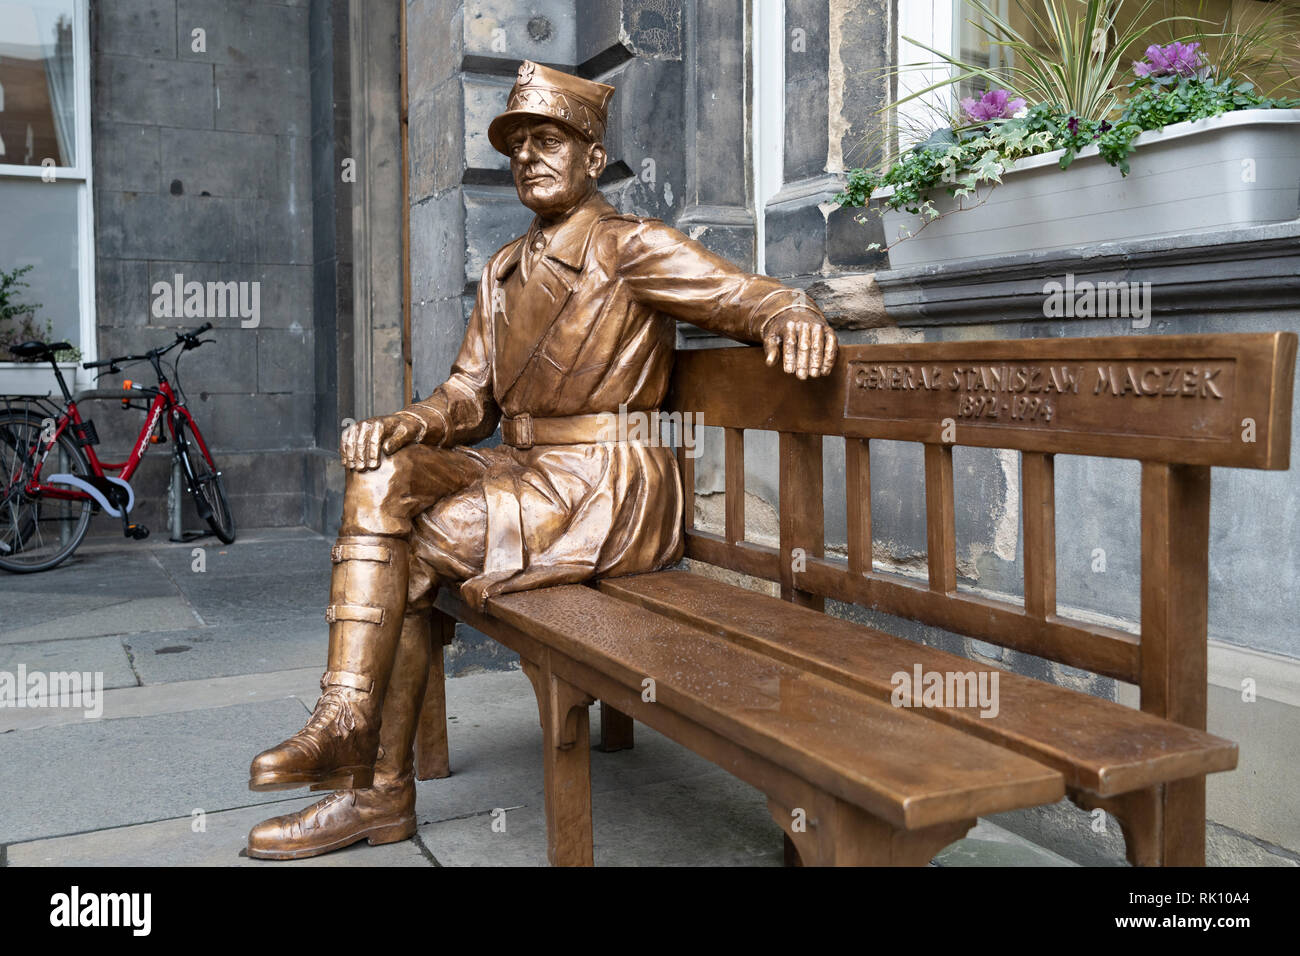 Estatua del héroe de guerra polaco Stanislaw Maczek General en salas en la ciudad vieja de Edimburgo, Escocia, Reino Unido Foto de stock